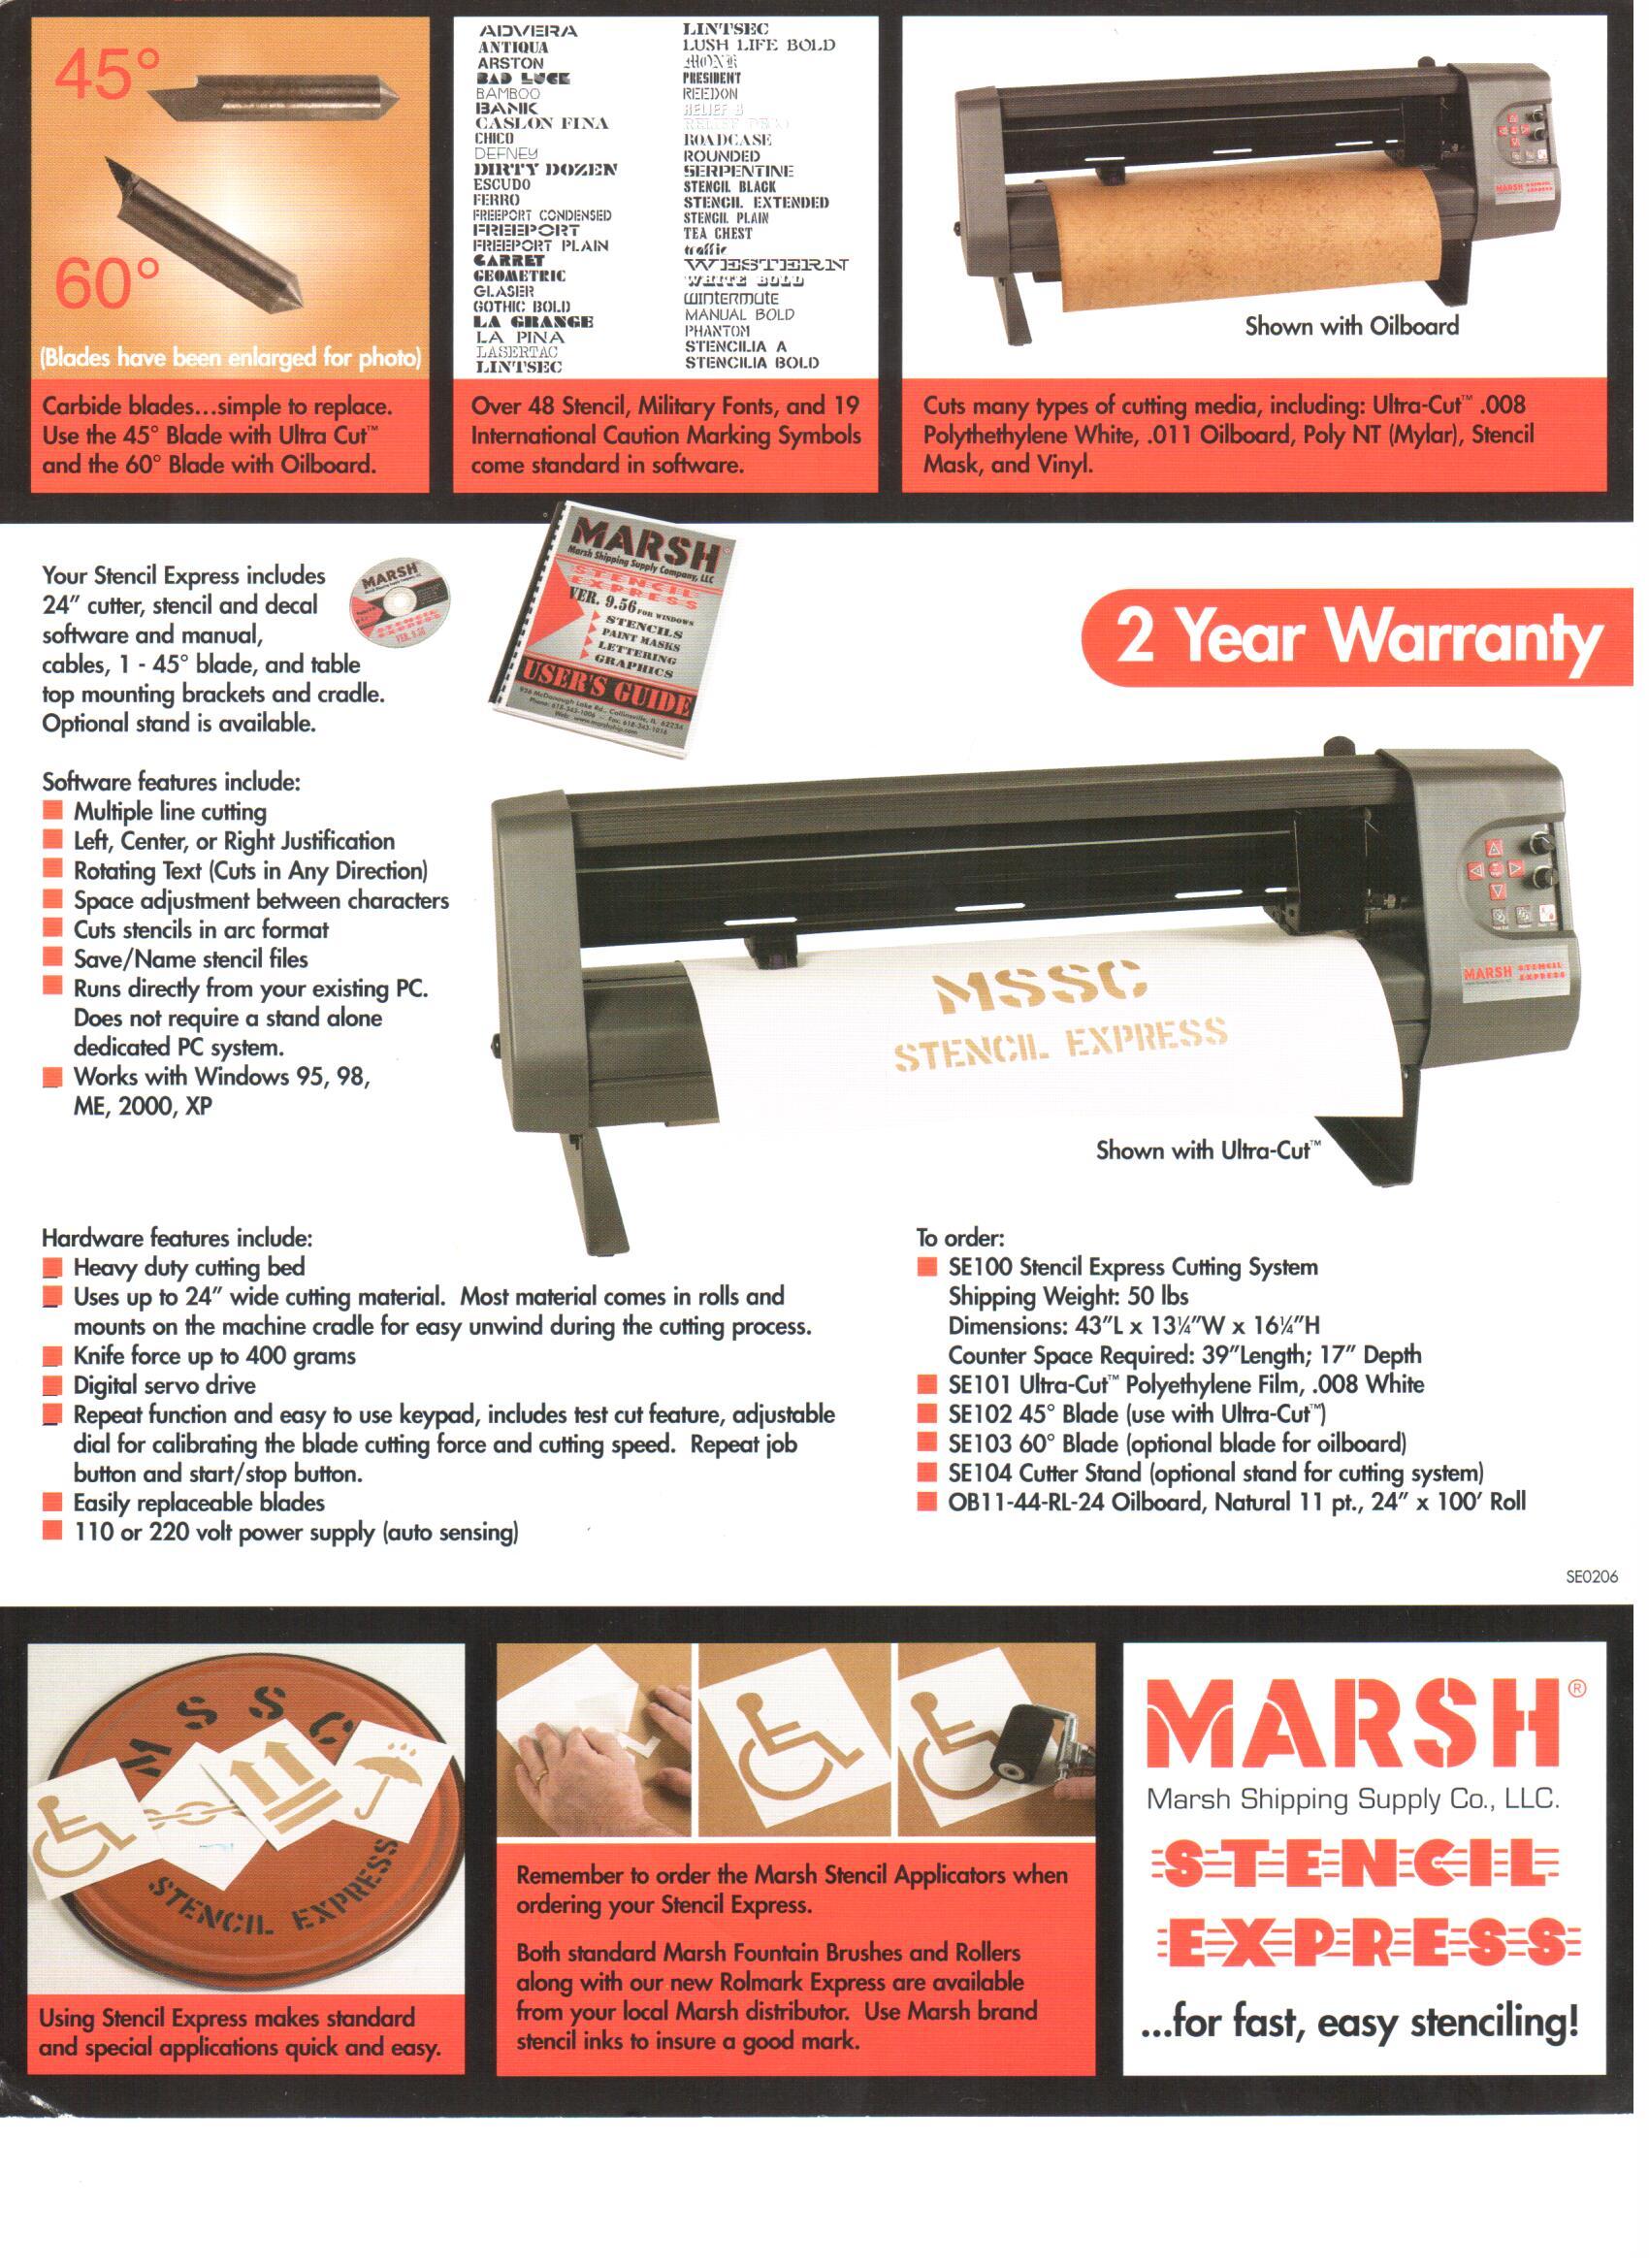 Stencil Machines; SUPER SIZE MARSH STENCIL MACHINE